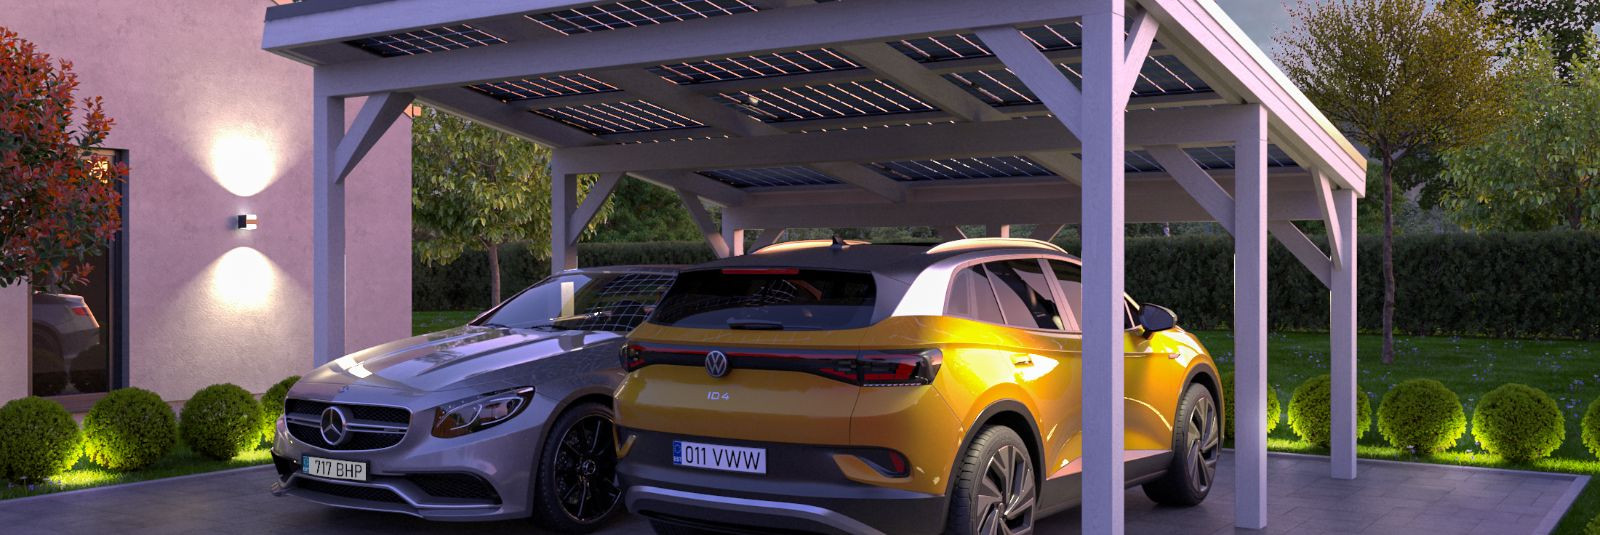 Puiduvennad OÜ uusim toode, Solar Ralf 28m2 auto varjualune, pakub mitmekülgset lahendust, mis ühendab stiili, kvaliteedi ja keskkonnasõbralikkuse. Tutvustame s